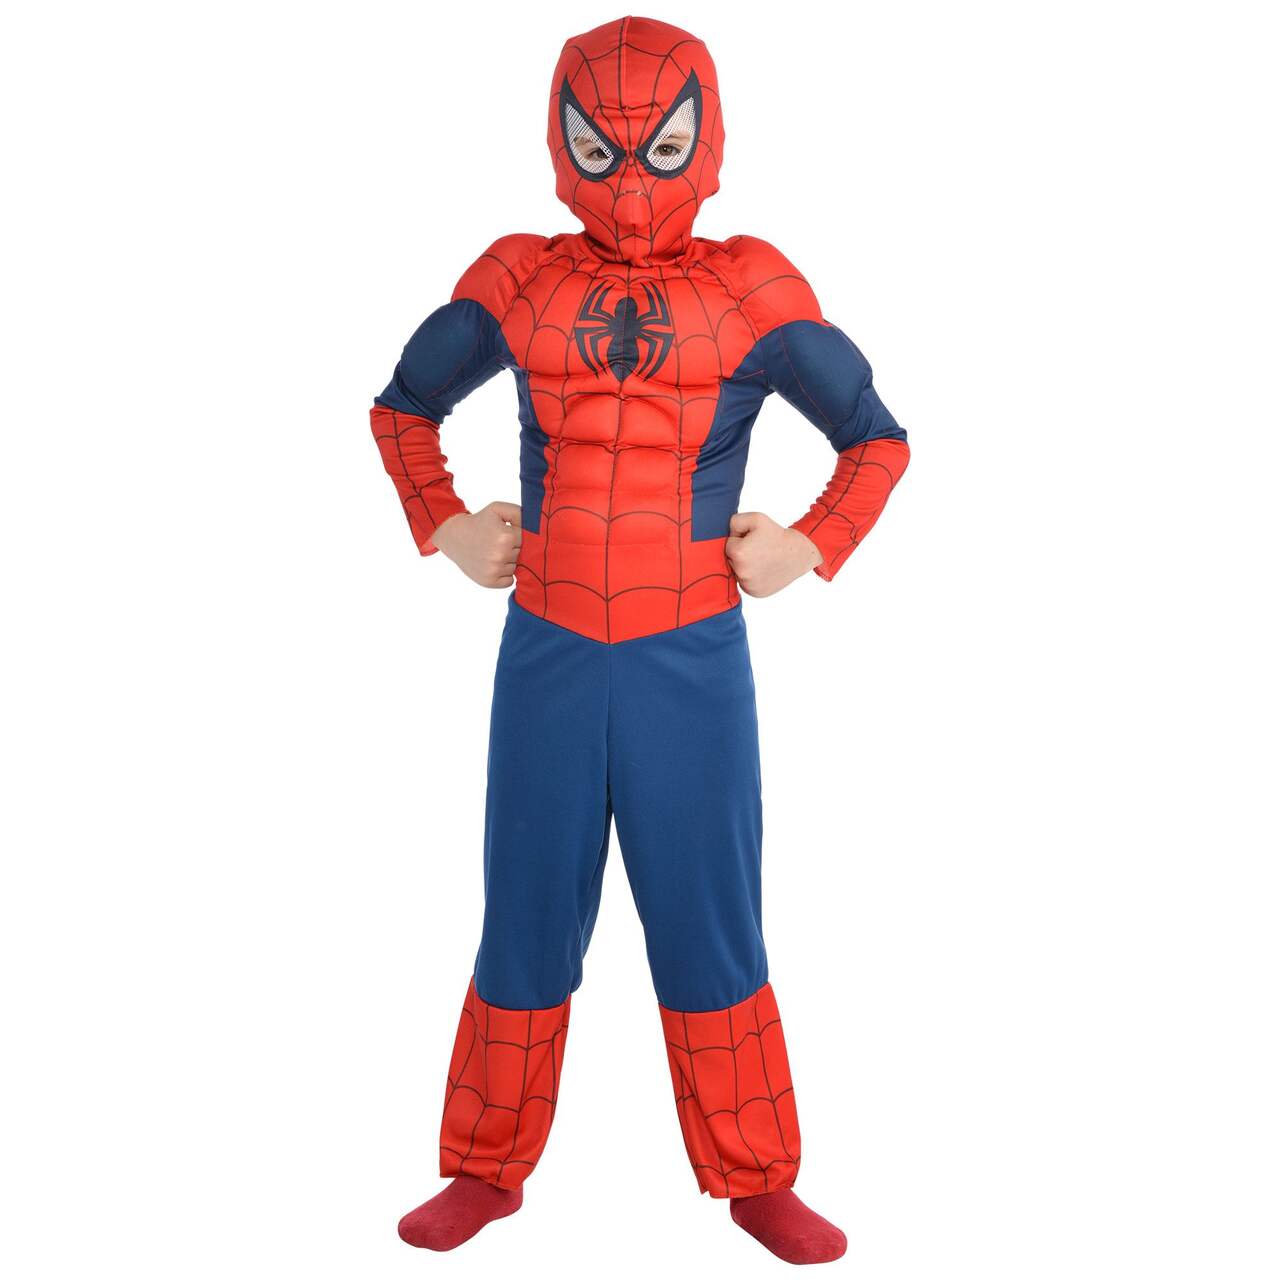 Toddler & Kids' Disney Marvel Spider-Man Peter Parker Blue/Red